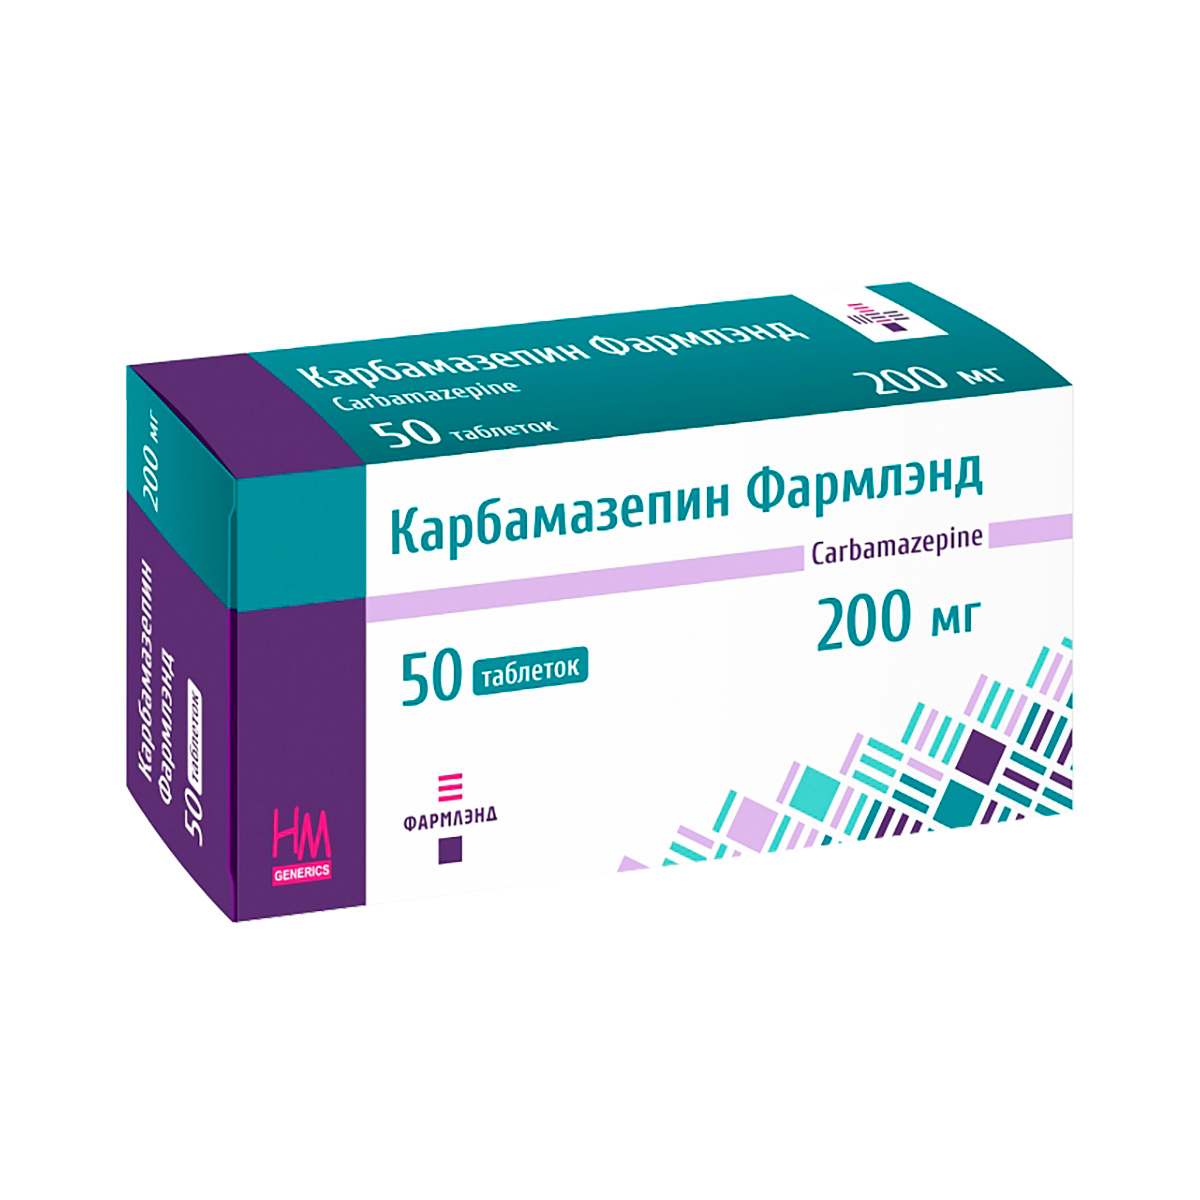 Карбамазепин Фармлэнд 200 мг таблетки 50 шт